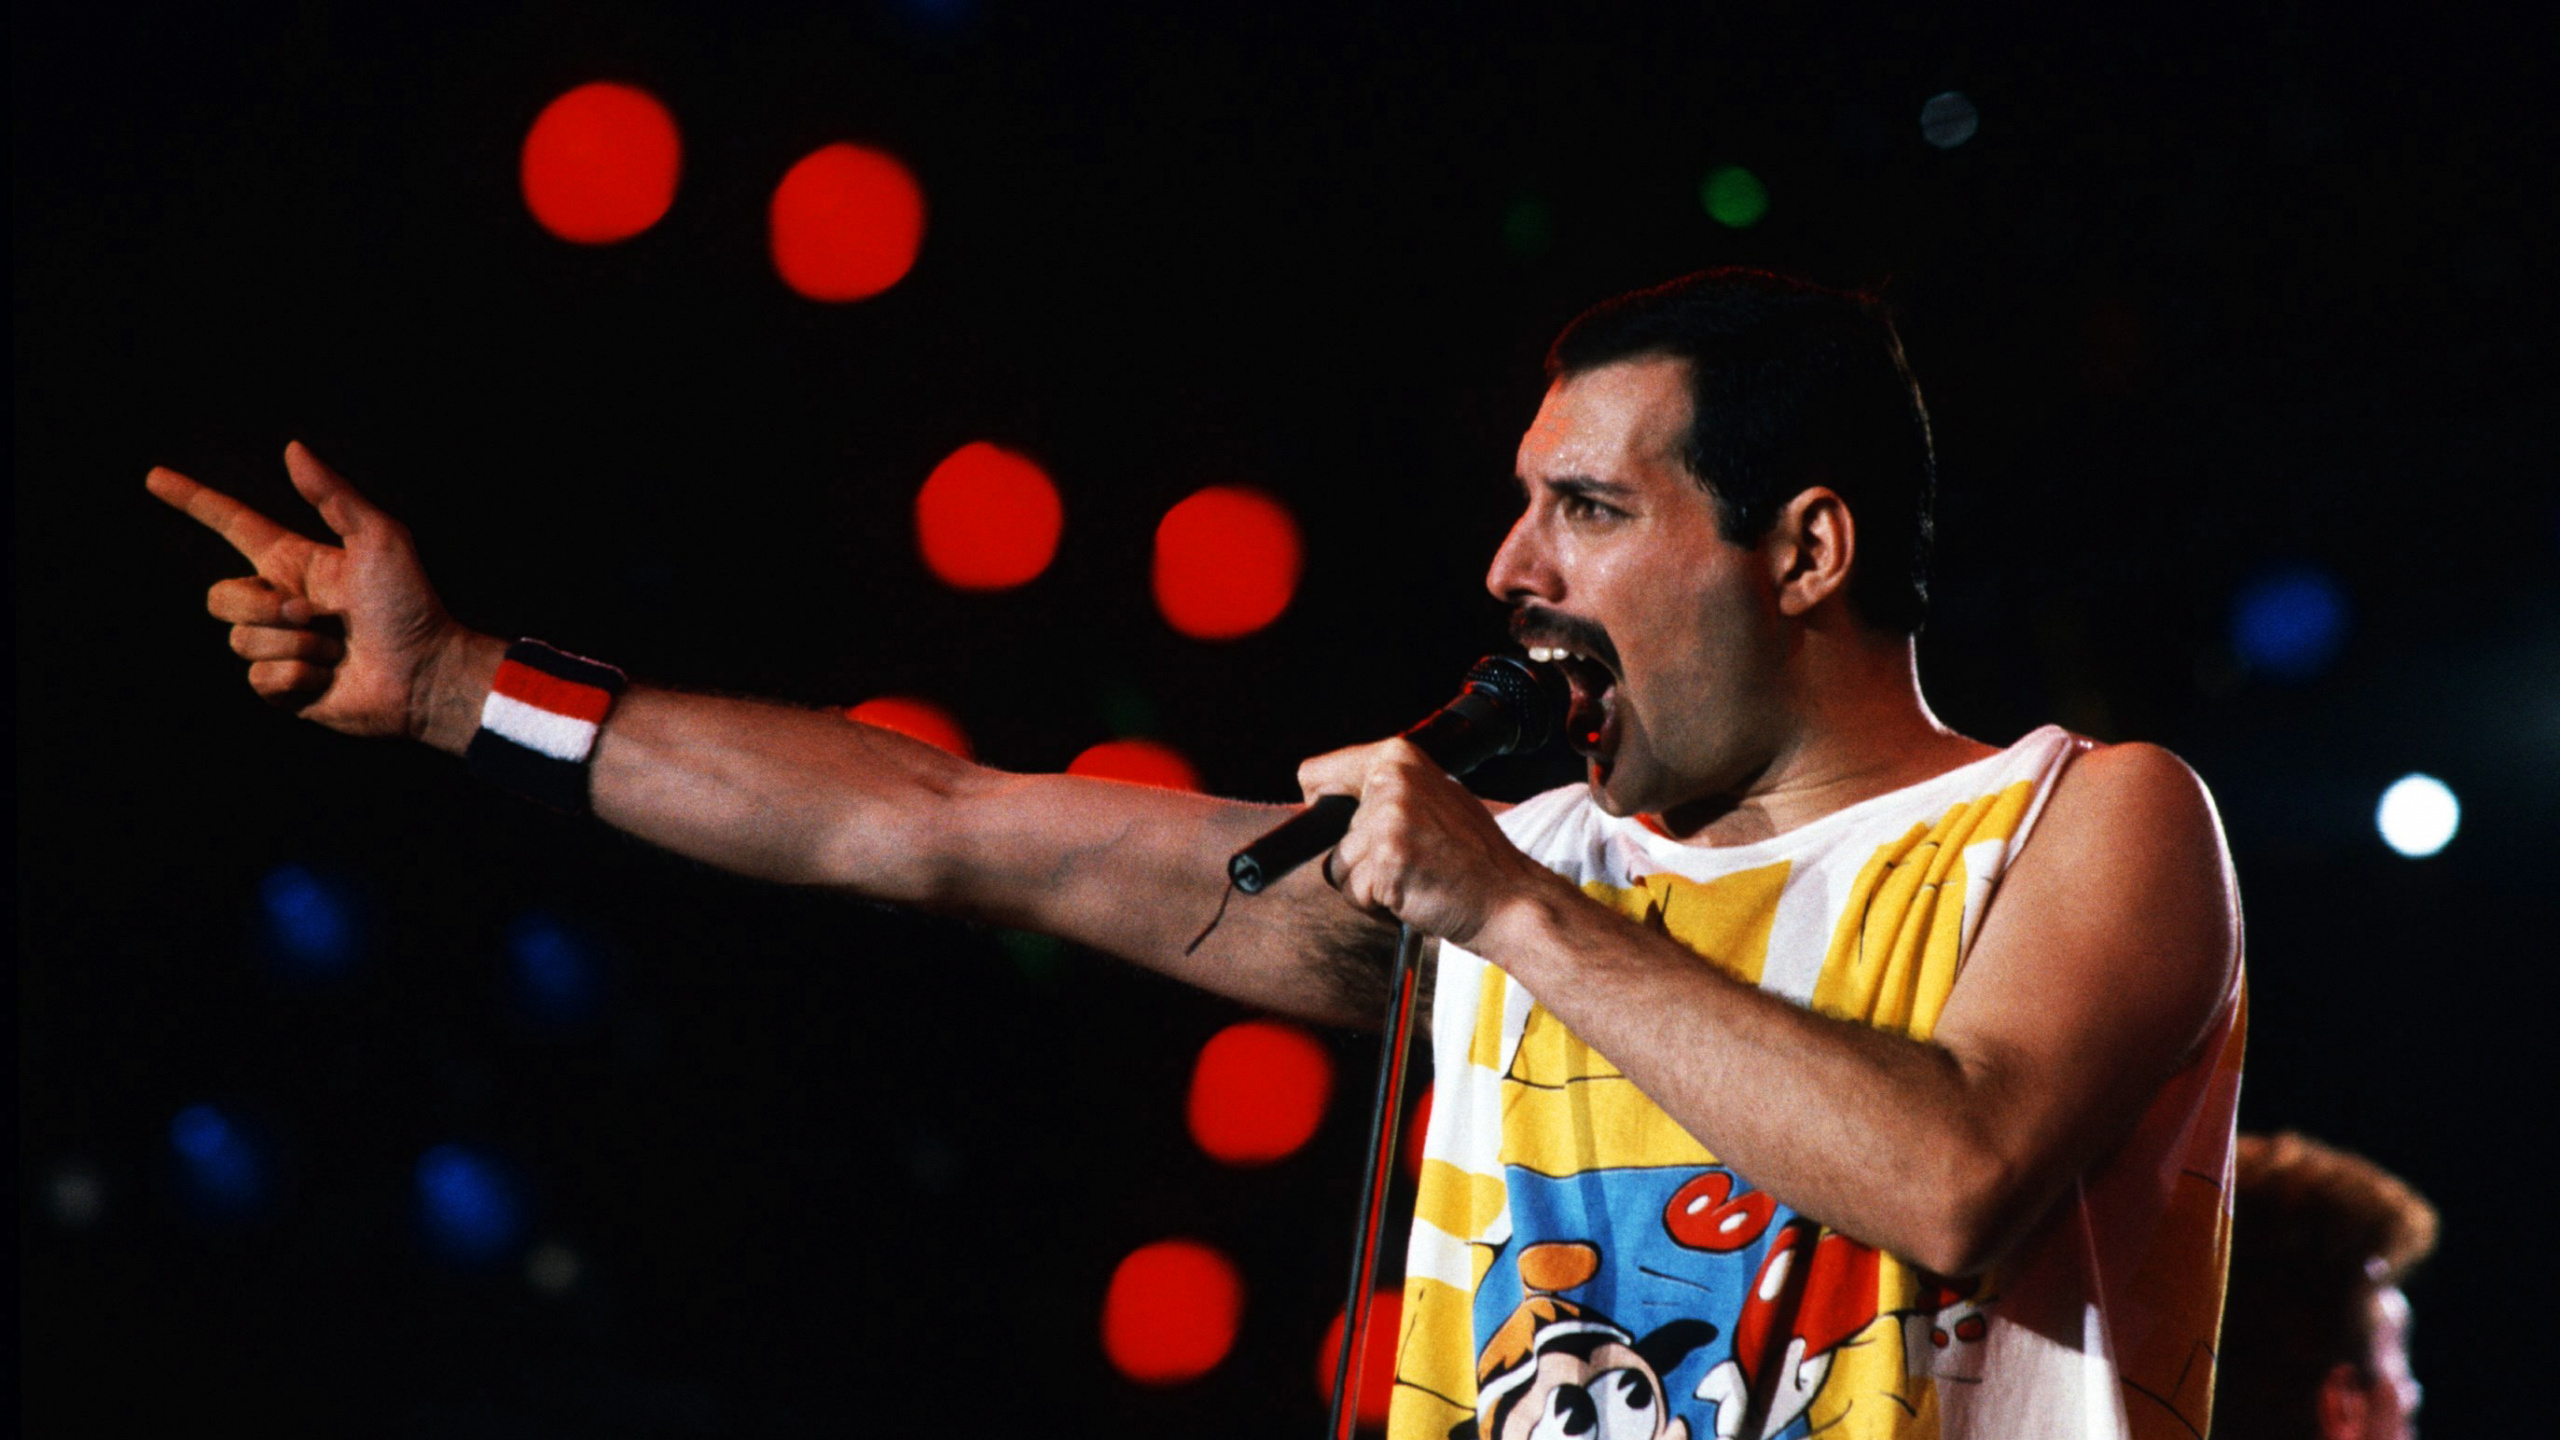 Freddie Mercury, Rendimiento, Sica, Entretenimiento, el Artista de Música. Wallpaper in 2560x1440 Resolution